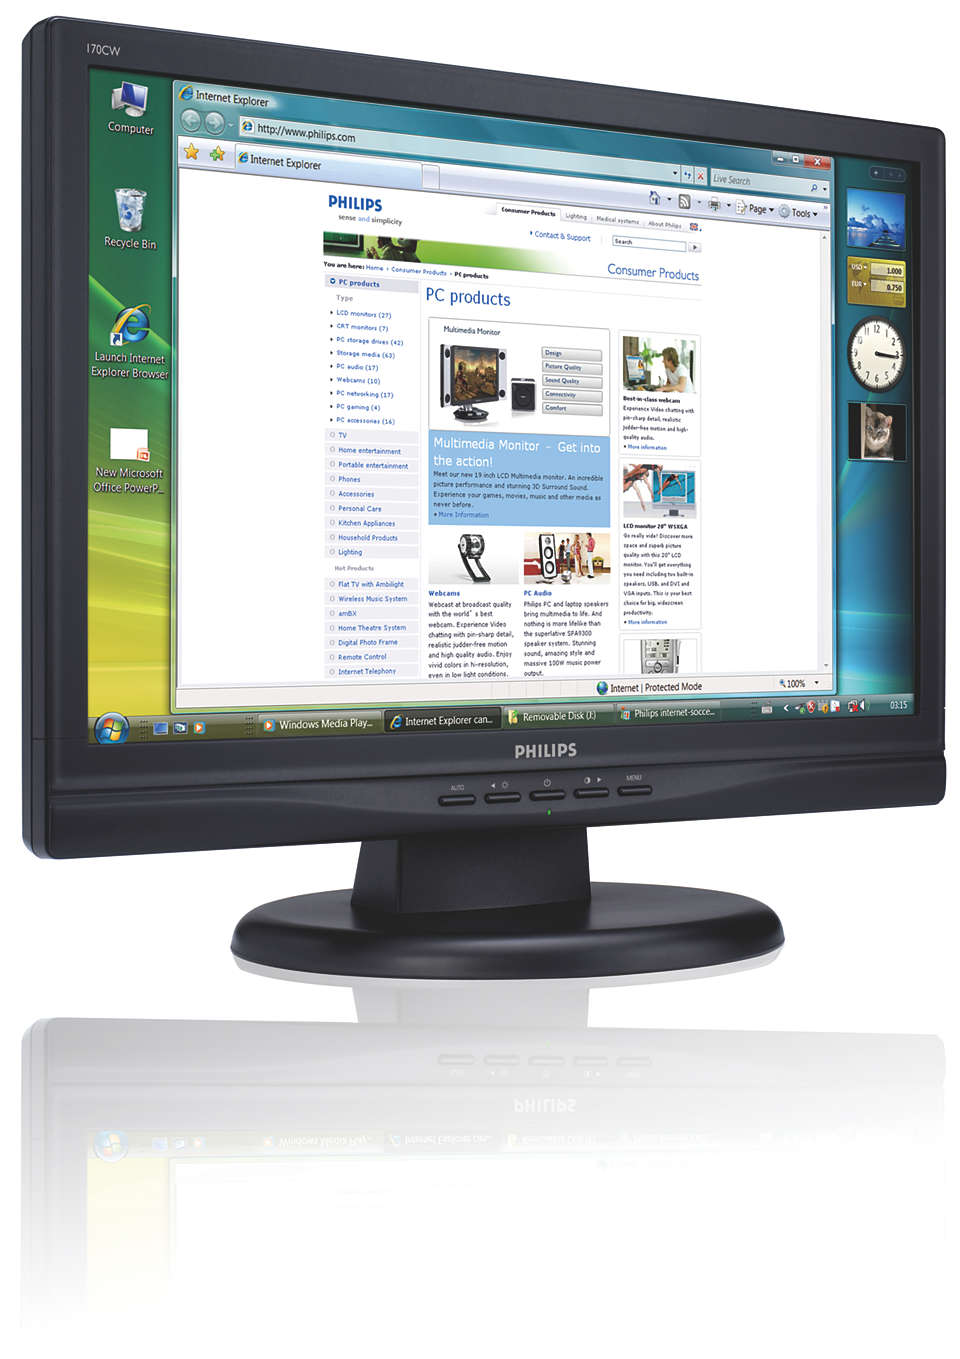 O melhor preço em monitor LCD widescreen